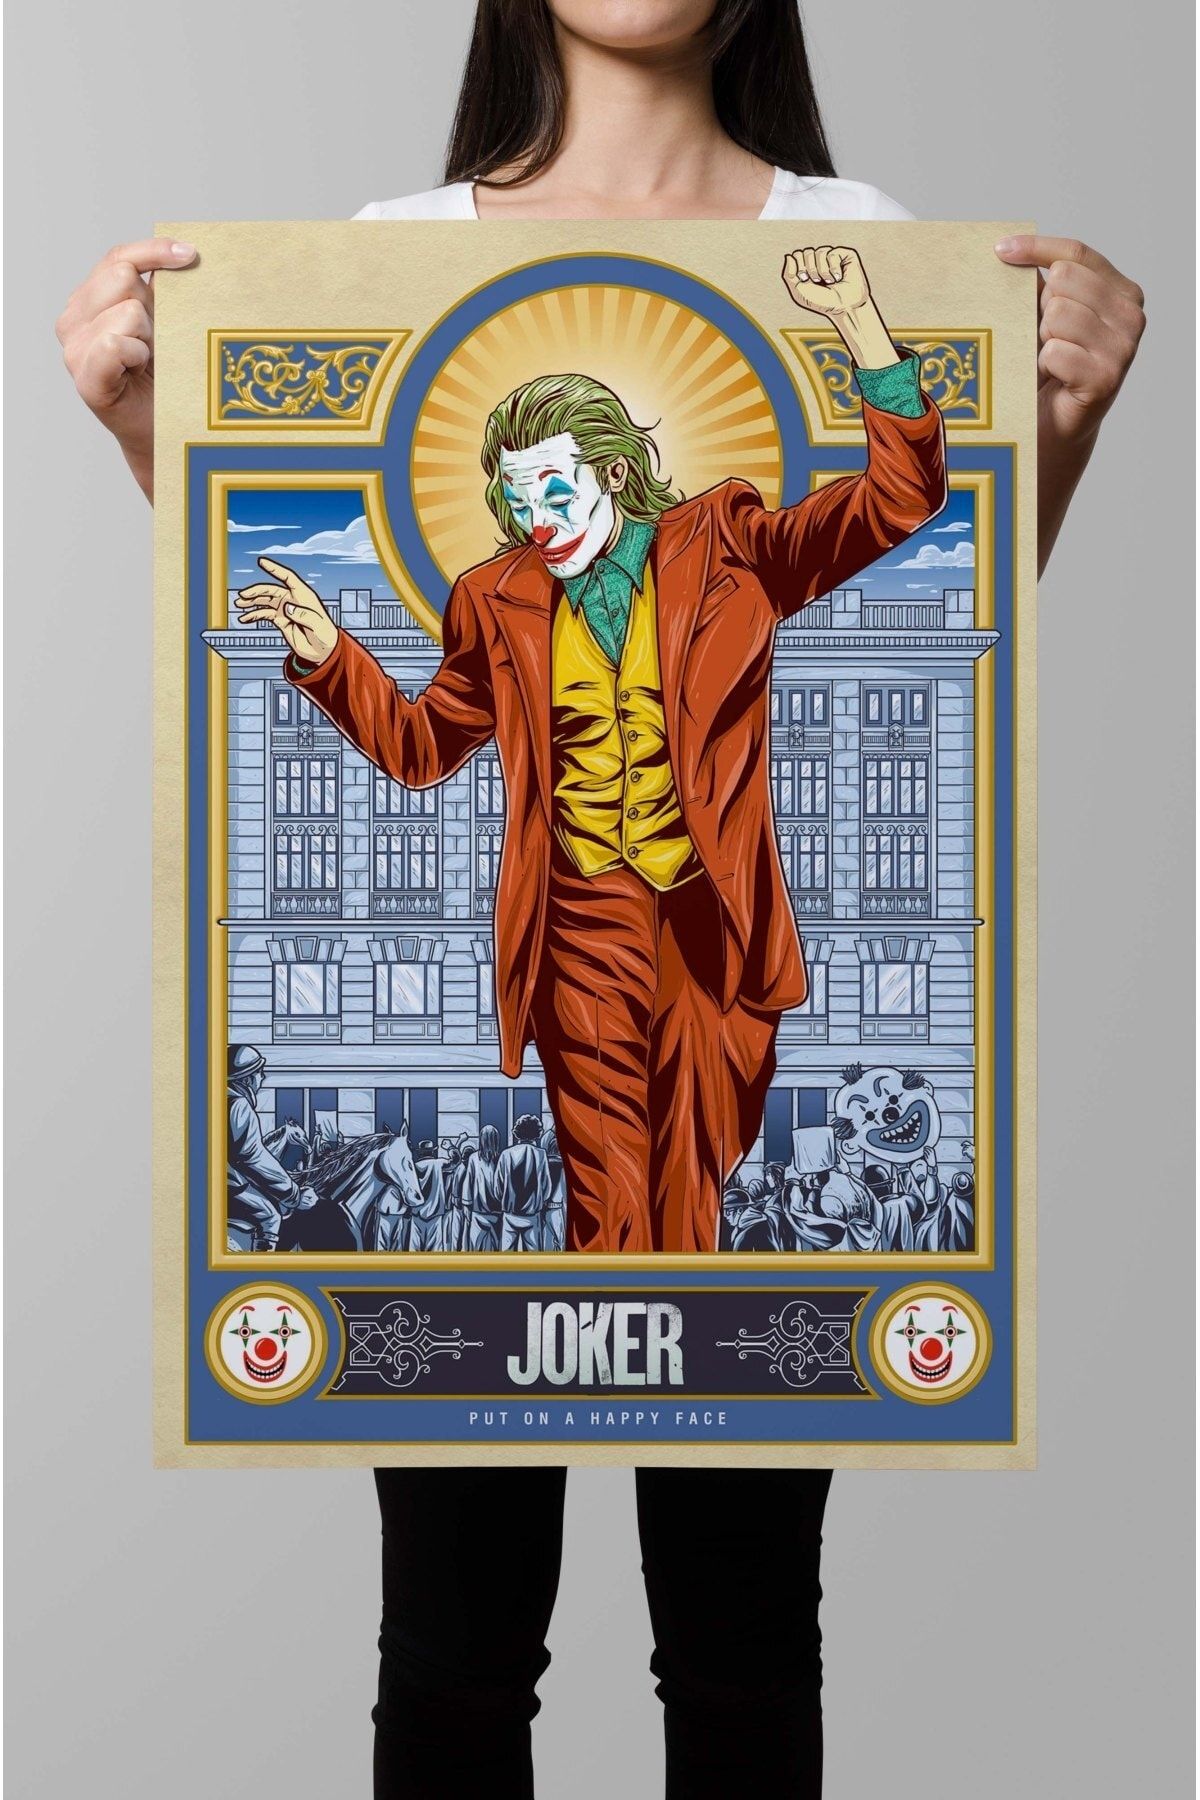 Denizposter Joker, Mutlu Bir Yüz Ifadesi Takın, Nostaljik Poster, 50x70